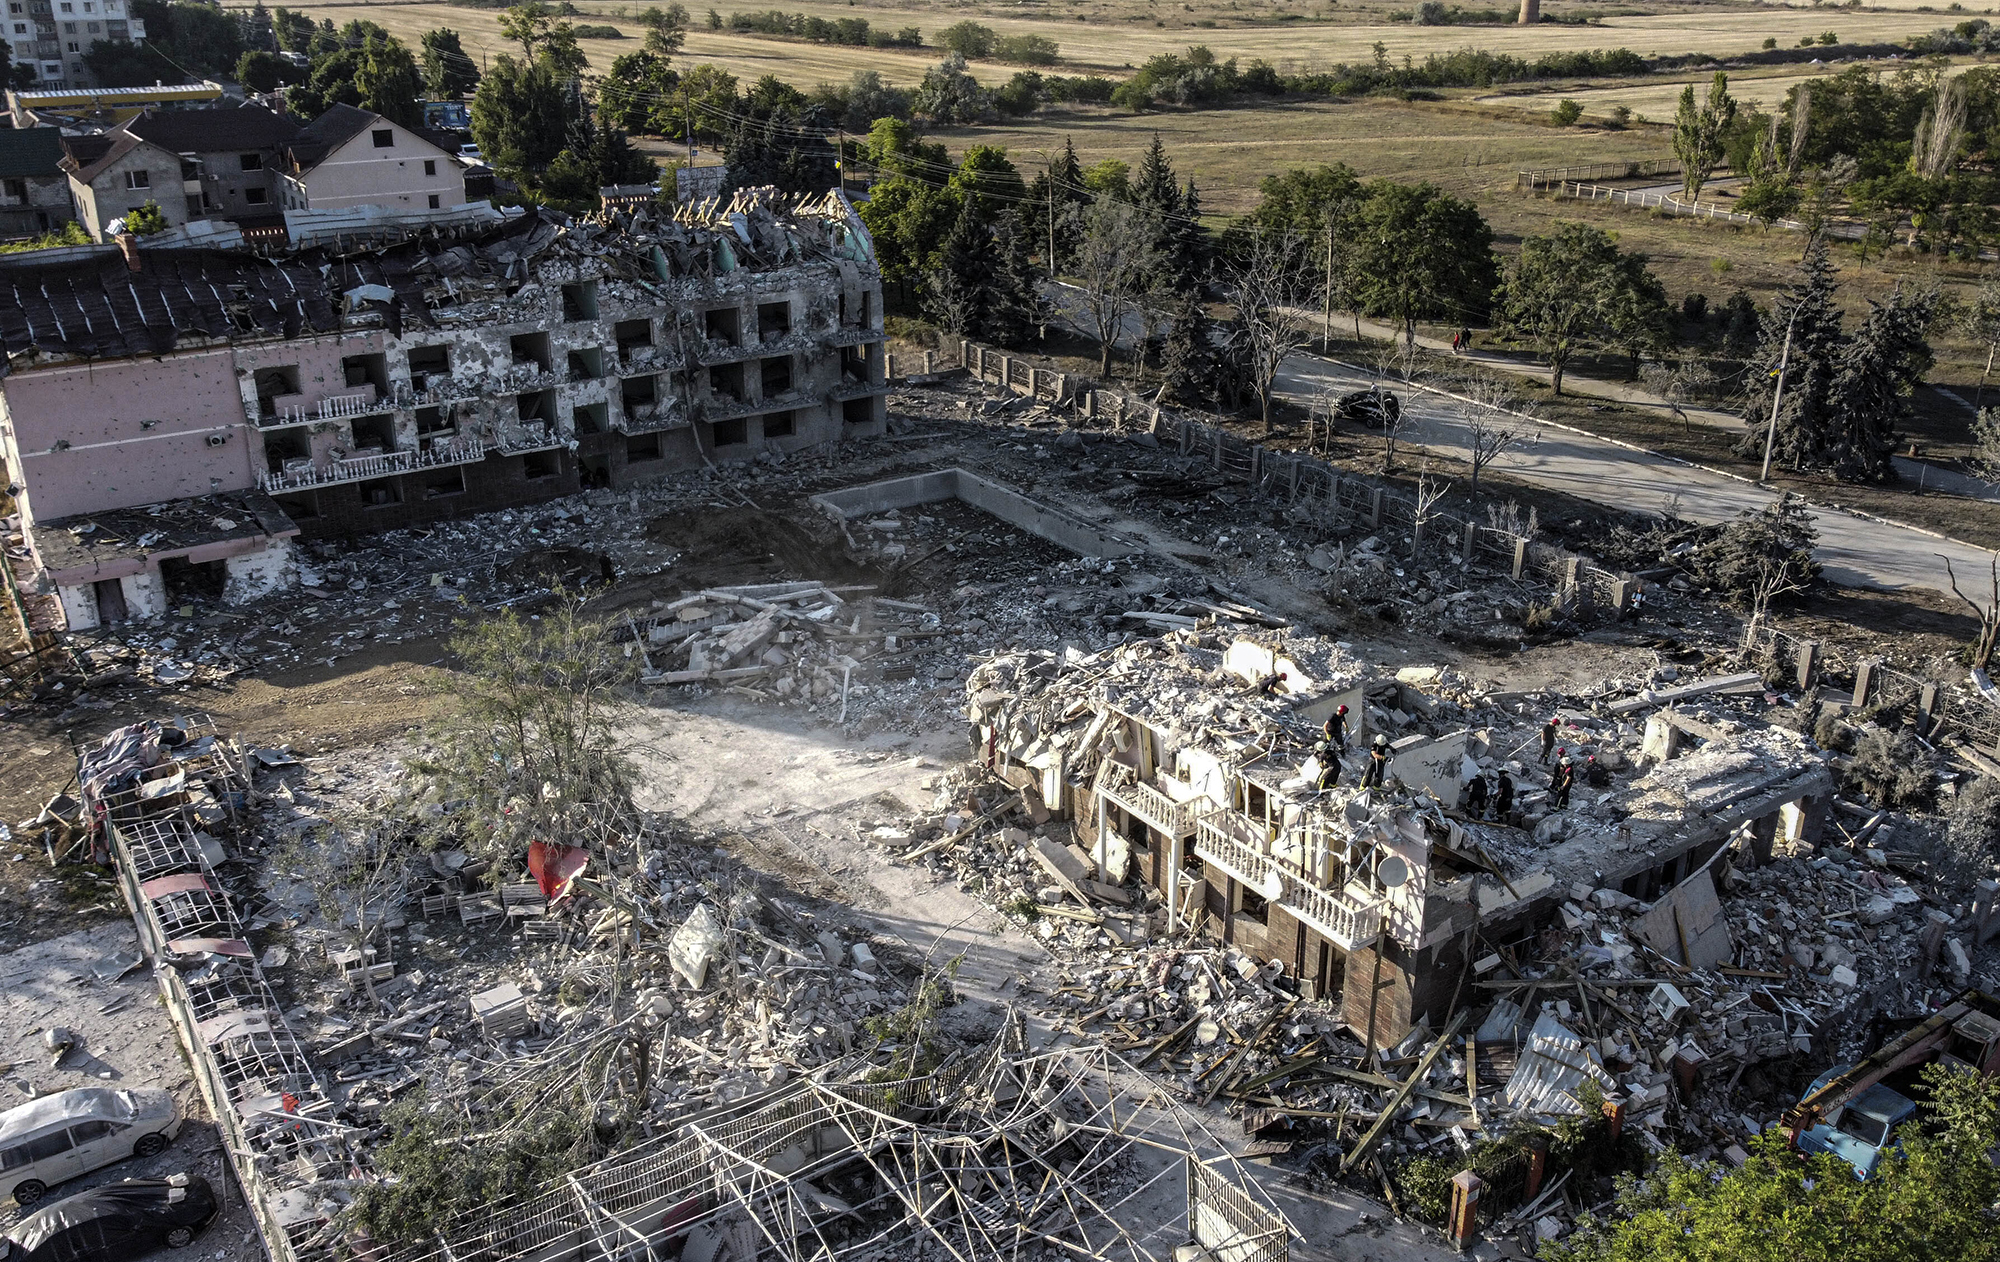 Ракетний терор проти міст. Хроніка п'яти місяців війни в Україні